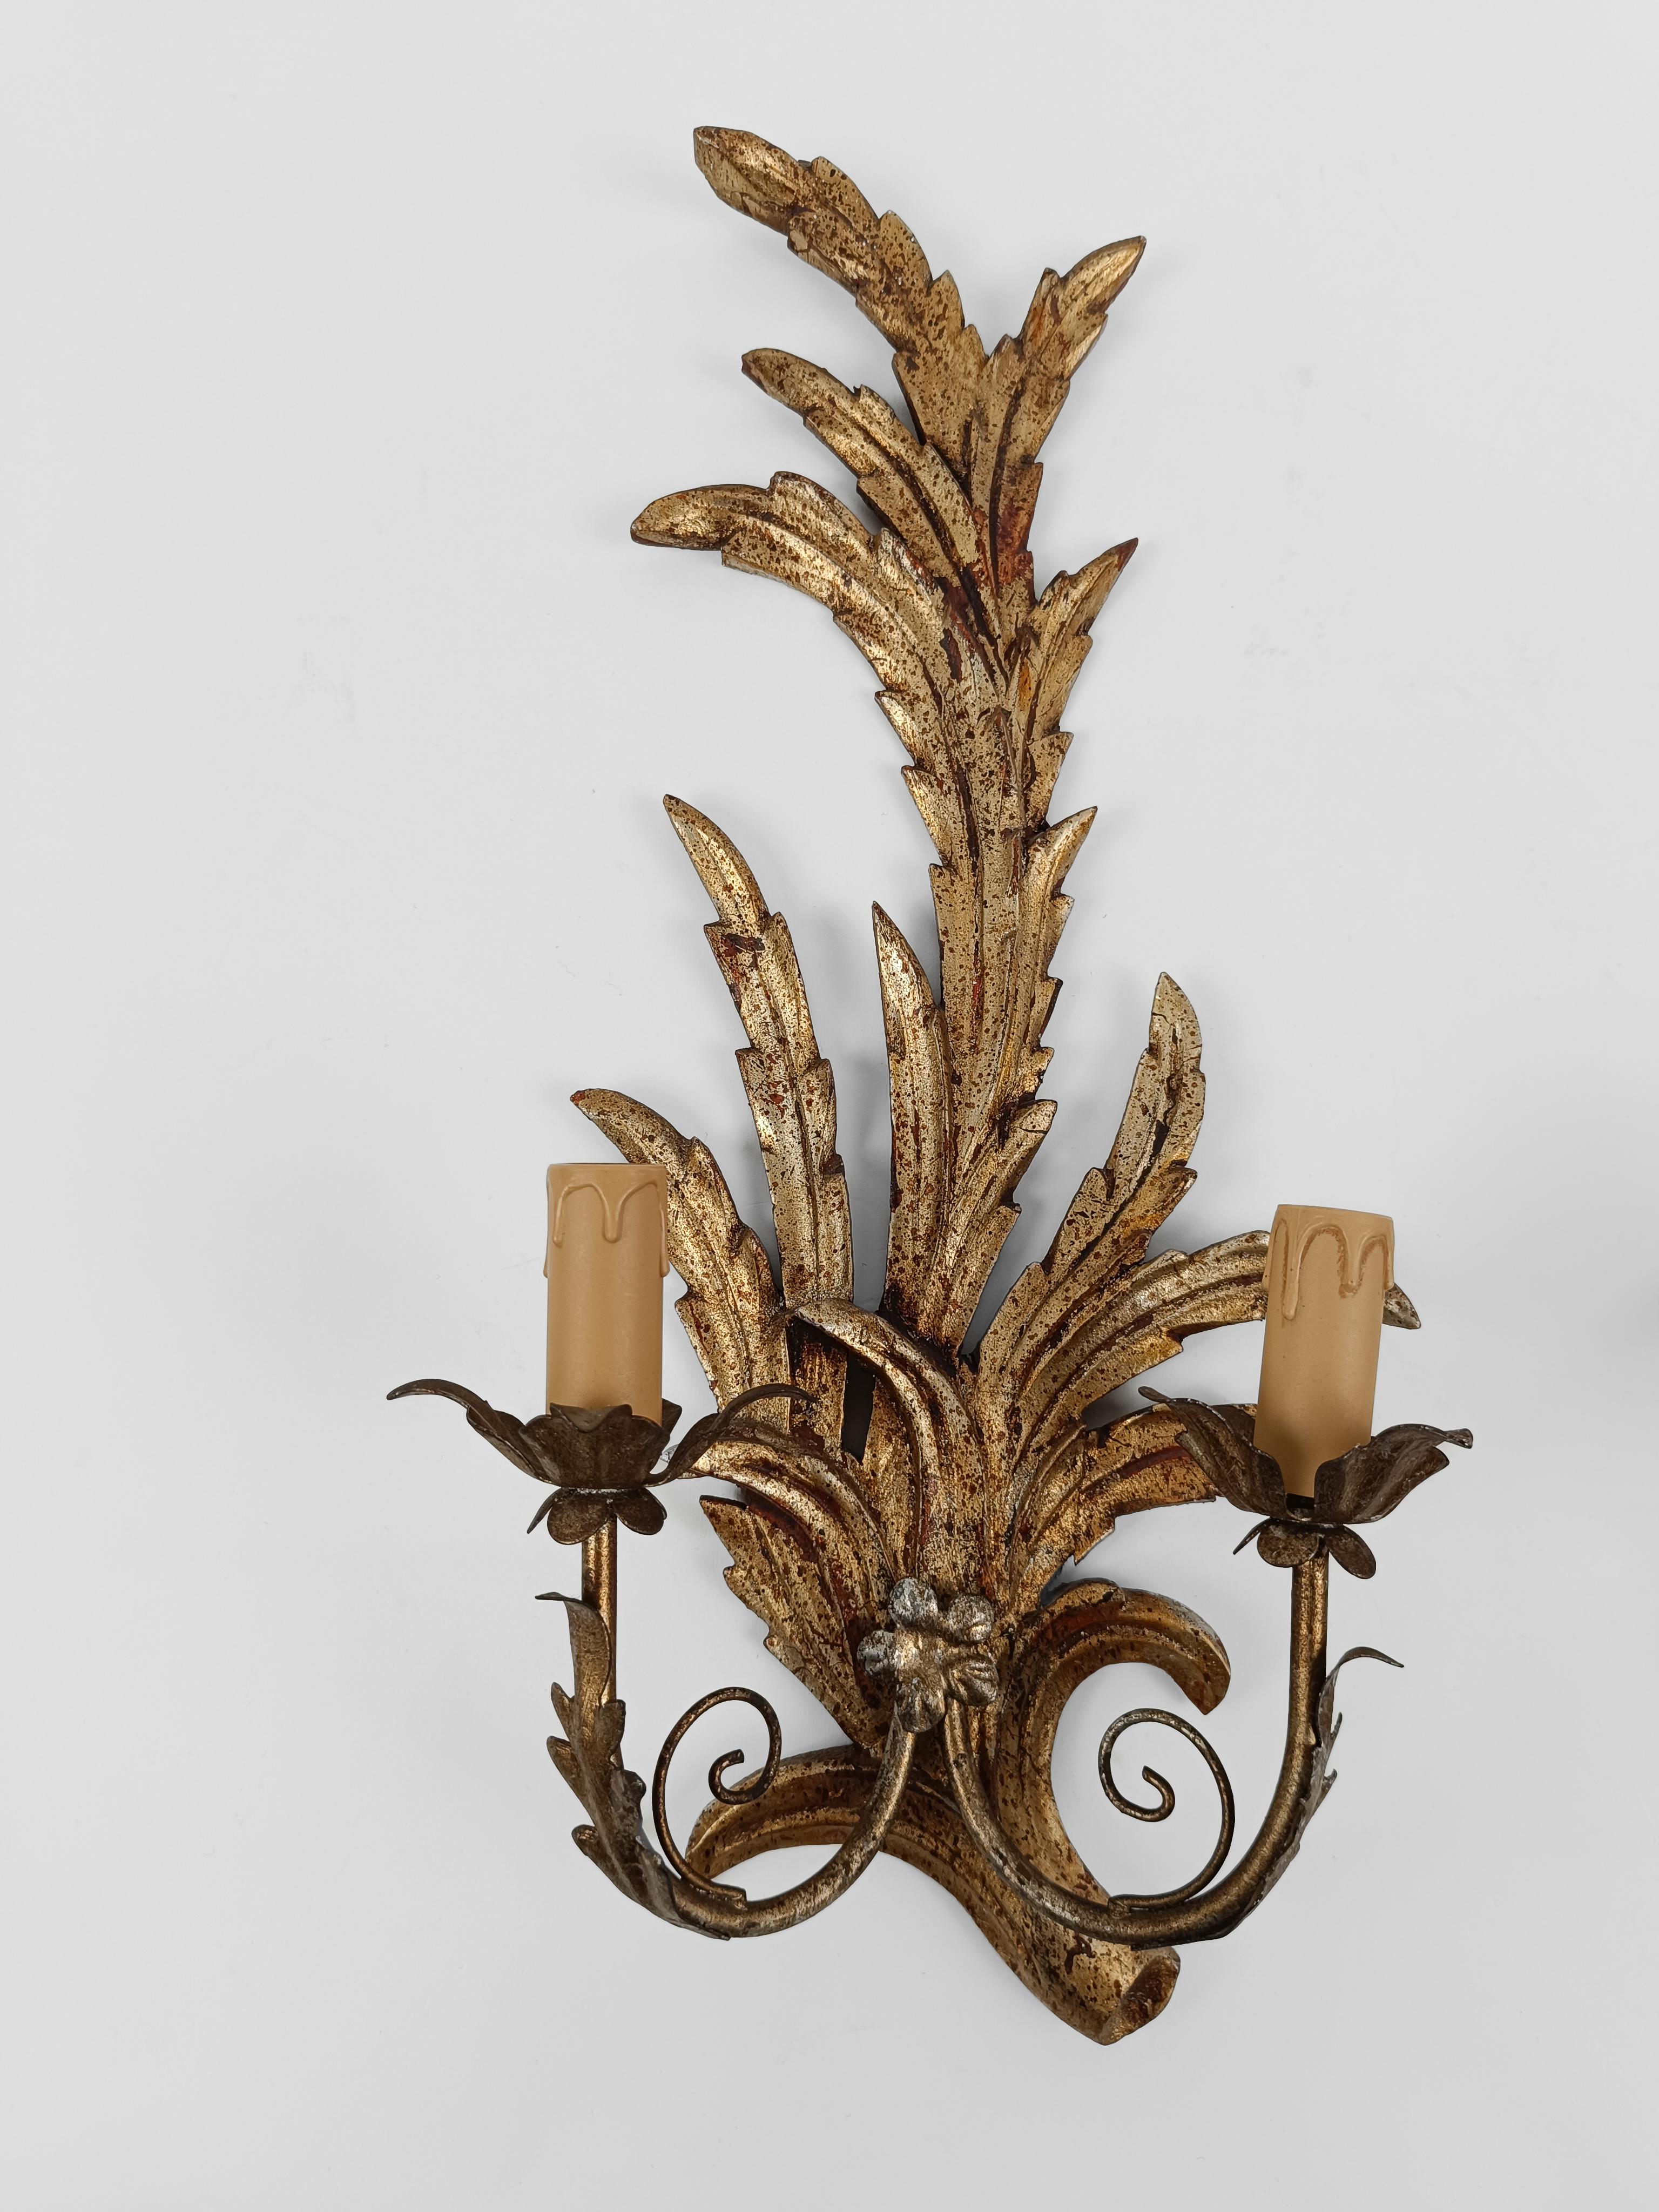 Paire d'appliques de style rococo fabriquées en Italie au milieu du XXe siècle.

La structure en bois de tilleul, sculptée à la main et ornée de motifs feuillus, est dorée selon la technique ancestrale de la feuille d'or.

Feuilles dentelées